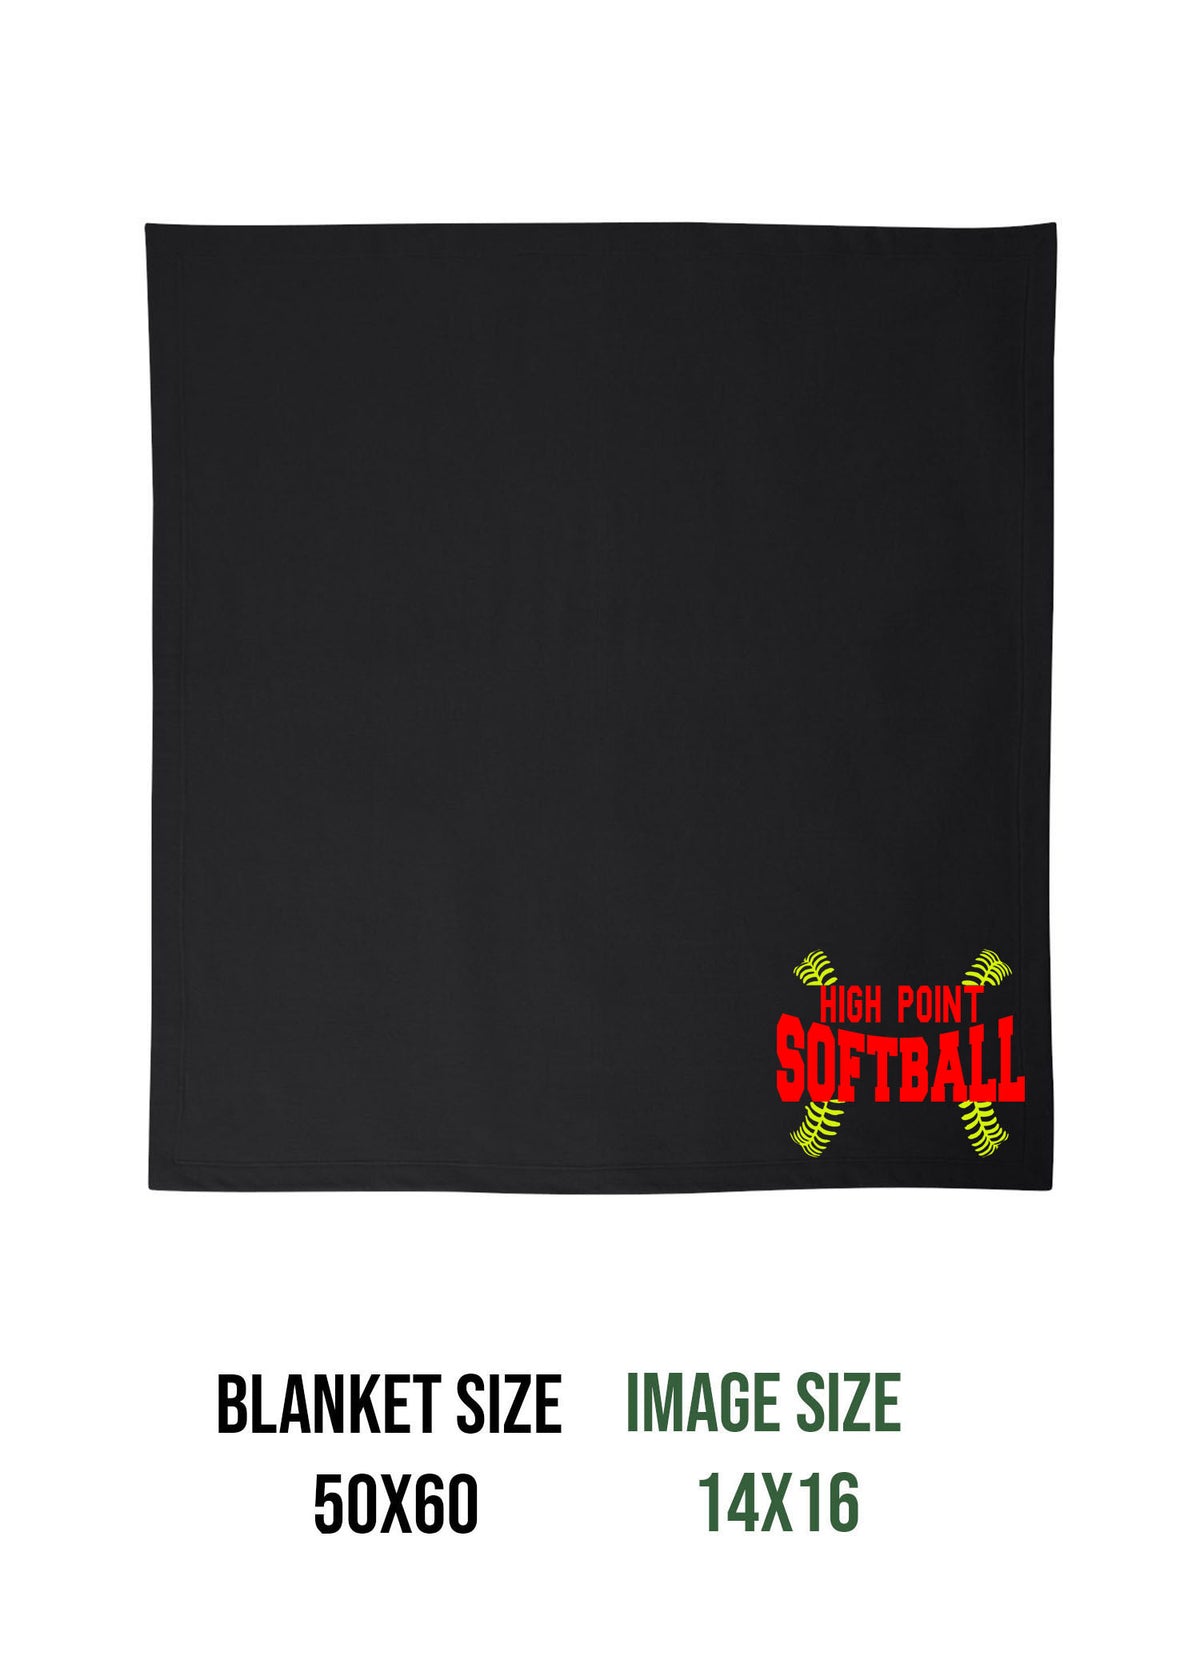 High Point Softball Design 1 Blanket